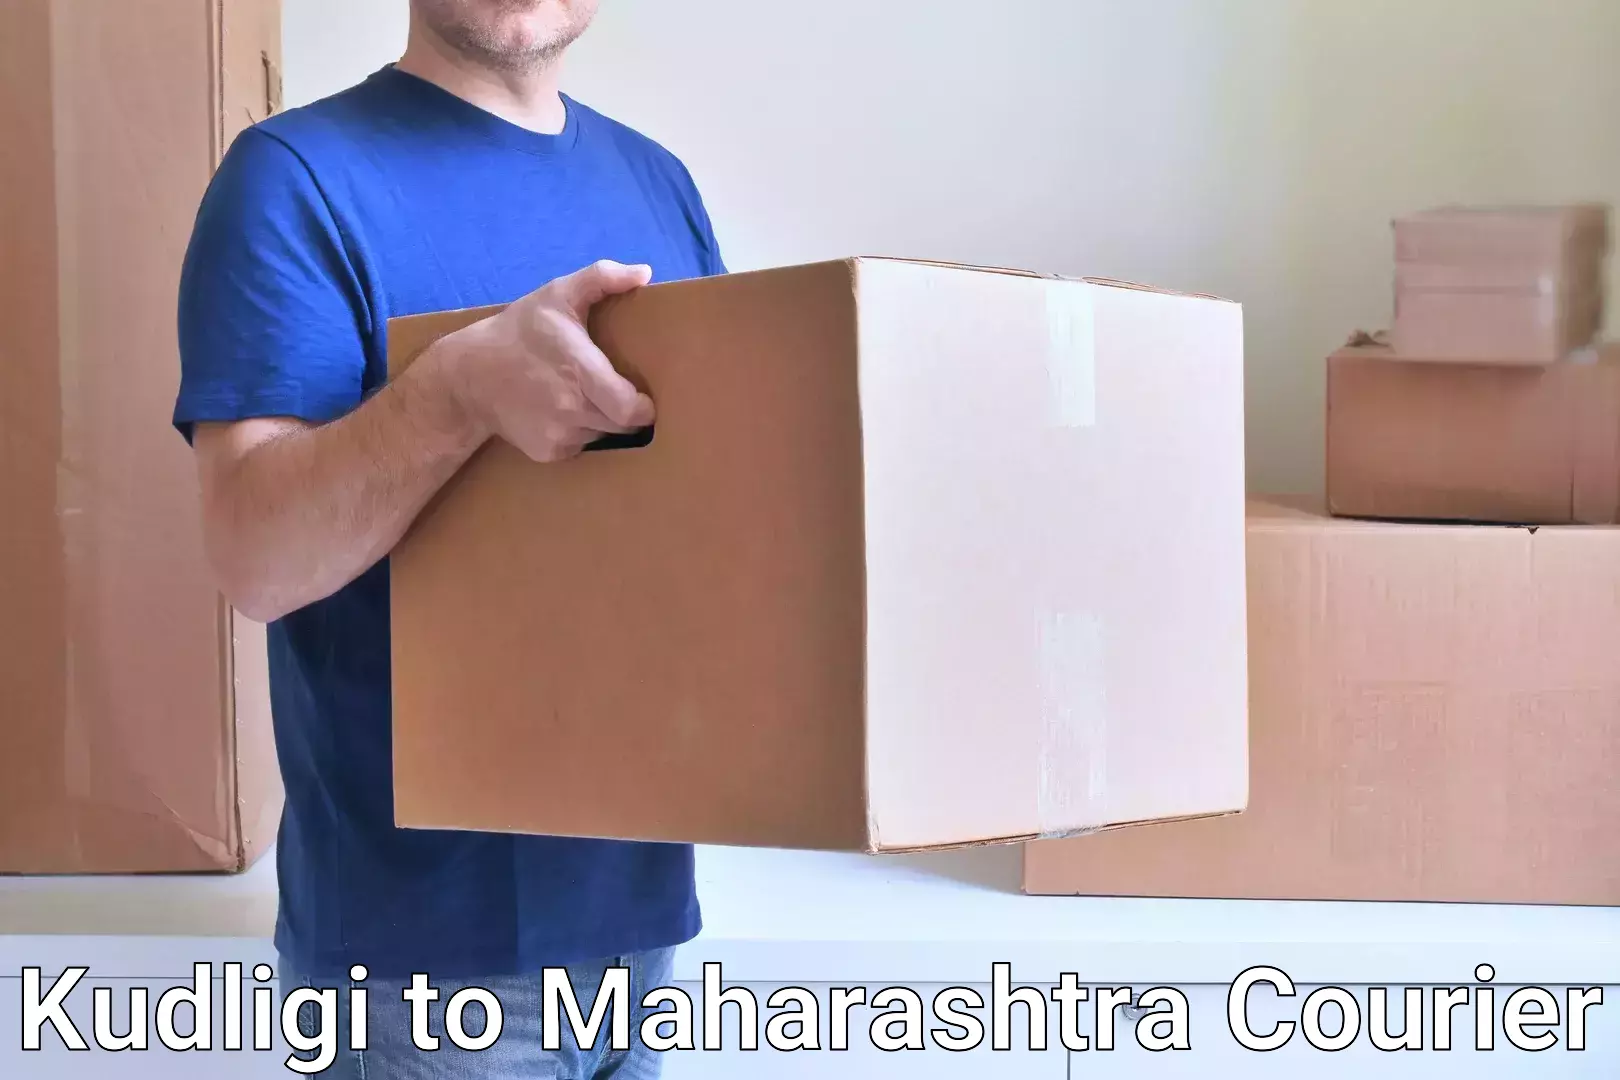 Efficient freight transportation Kudligi to Maharashtra